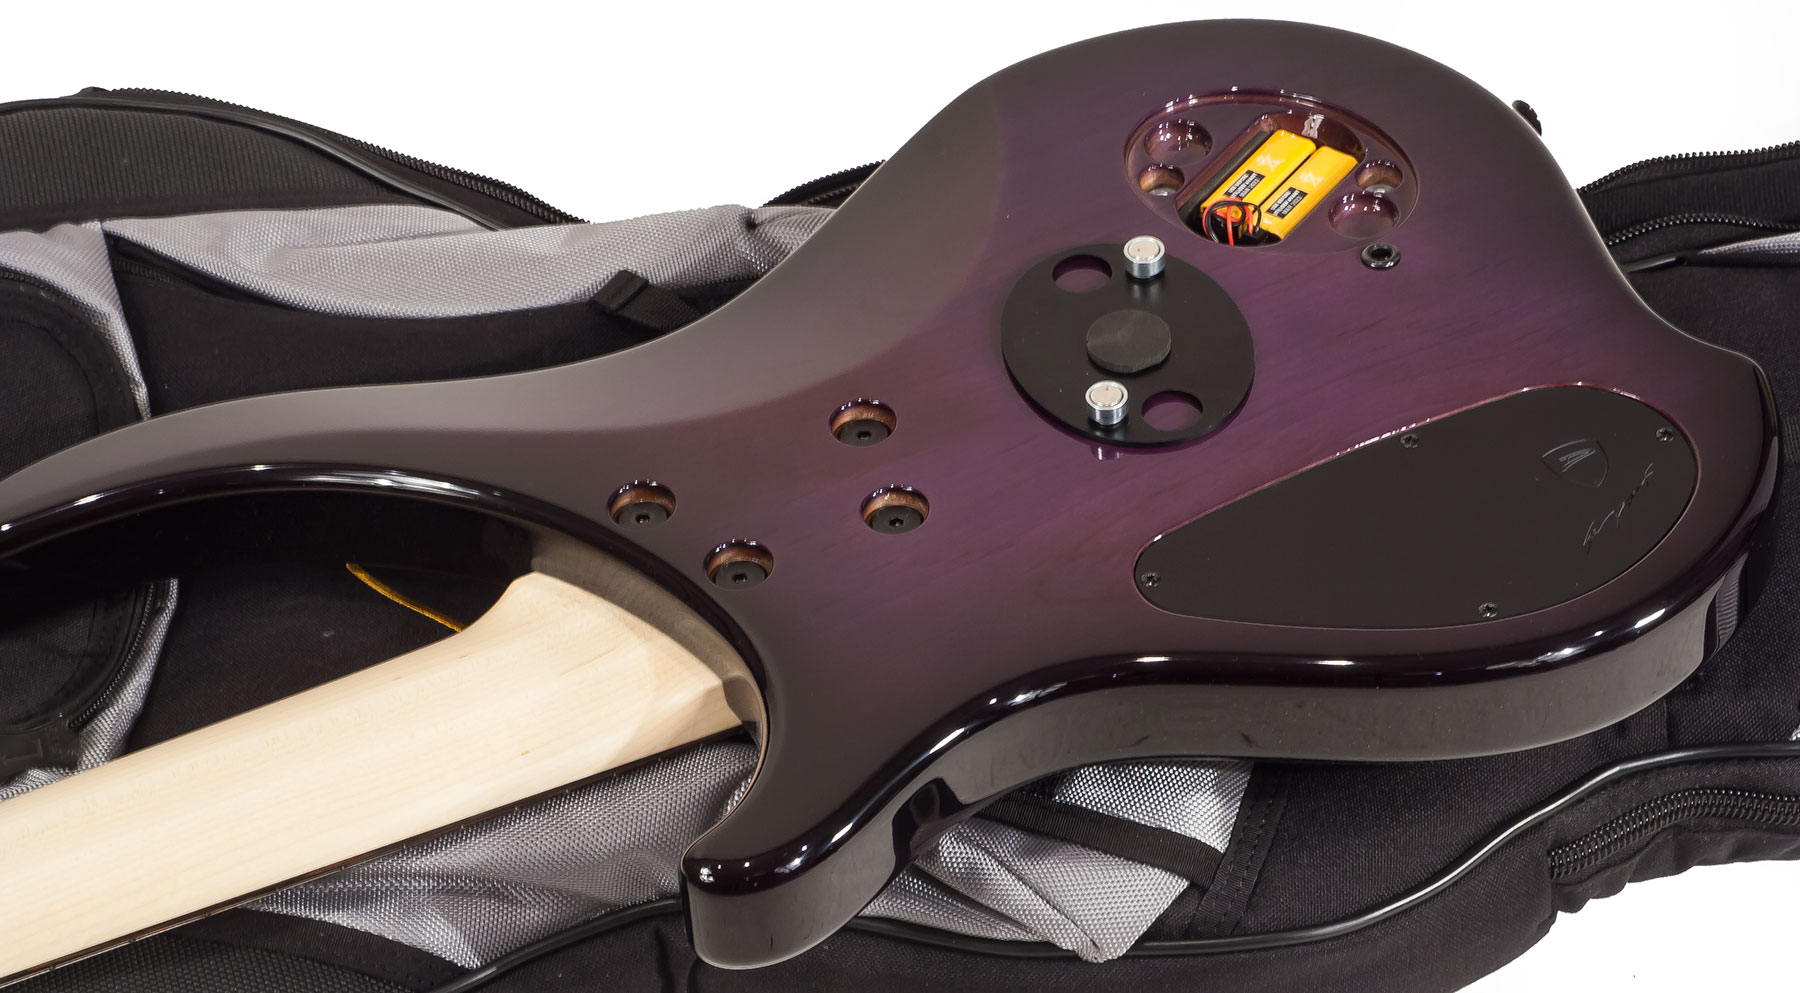 Dingwall Afterburner I 5 2-pickups Wen +housse - Purple Blackburst - Solidbody E-bass - Variation 3